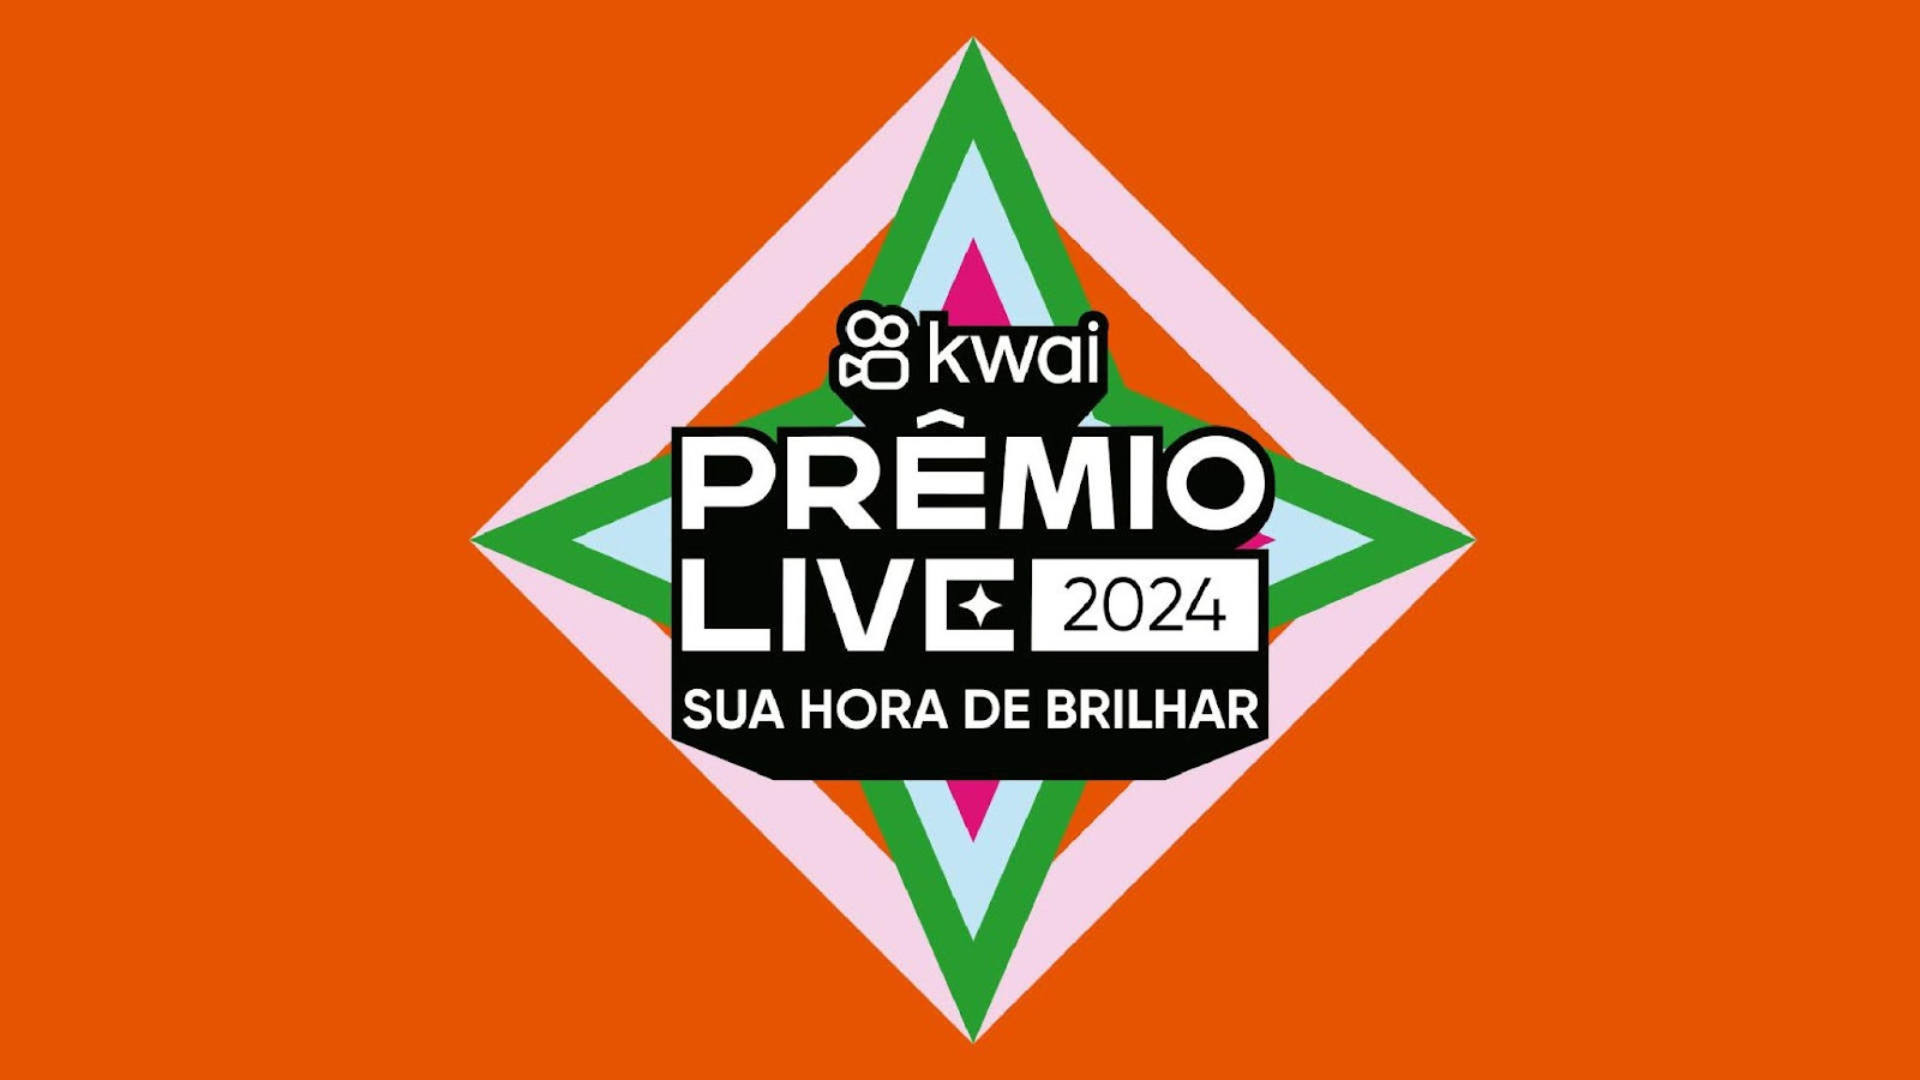 Kwai promove primeira edição do 'Prêmio Live Kwai' para criadores de live no Brasil